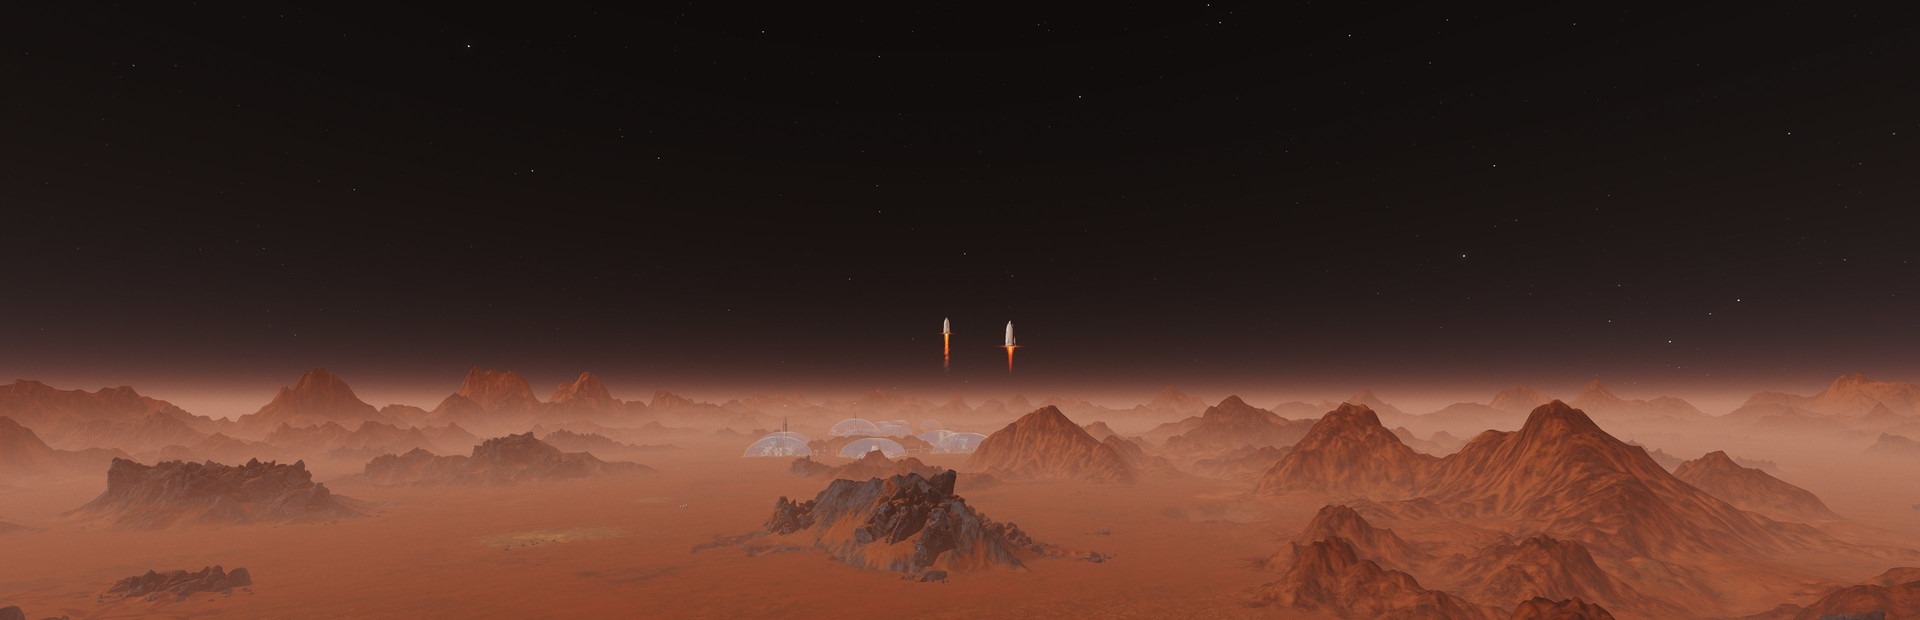 Banner Surviving Mars: Martian Express